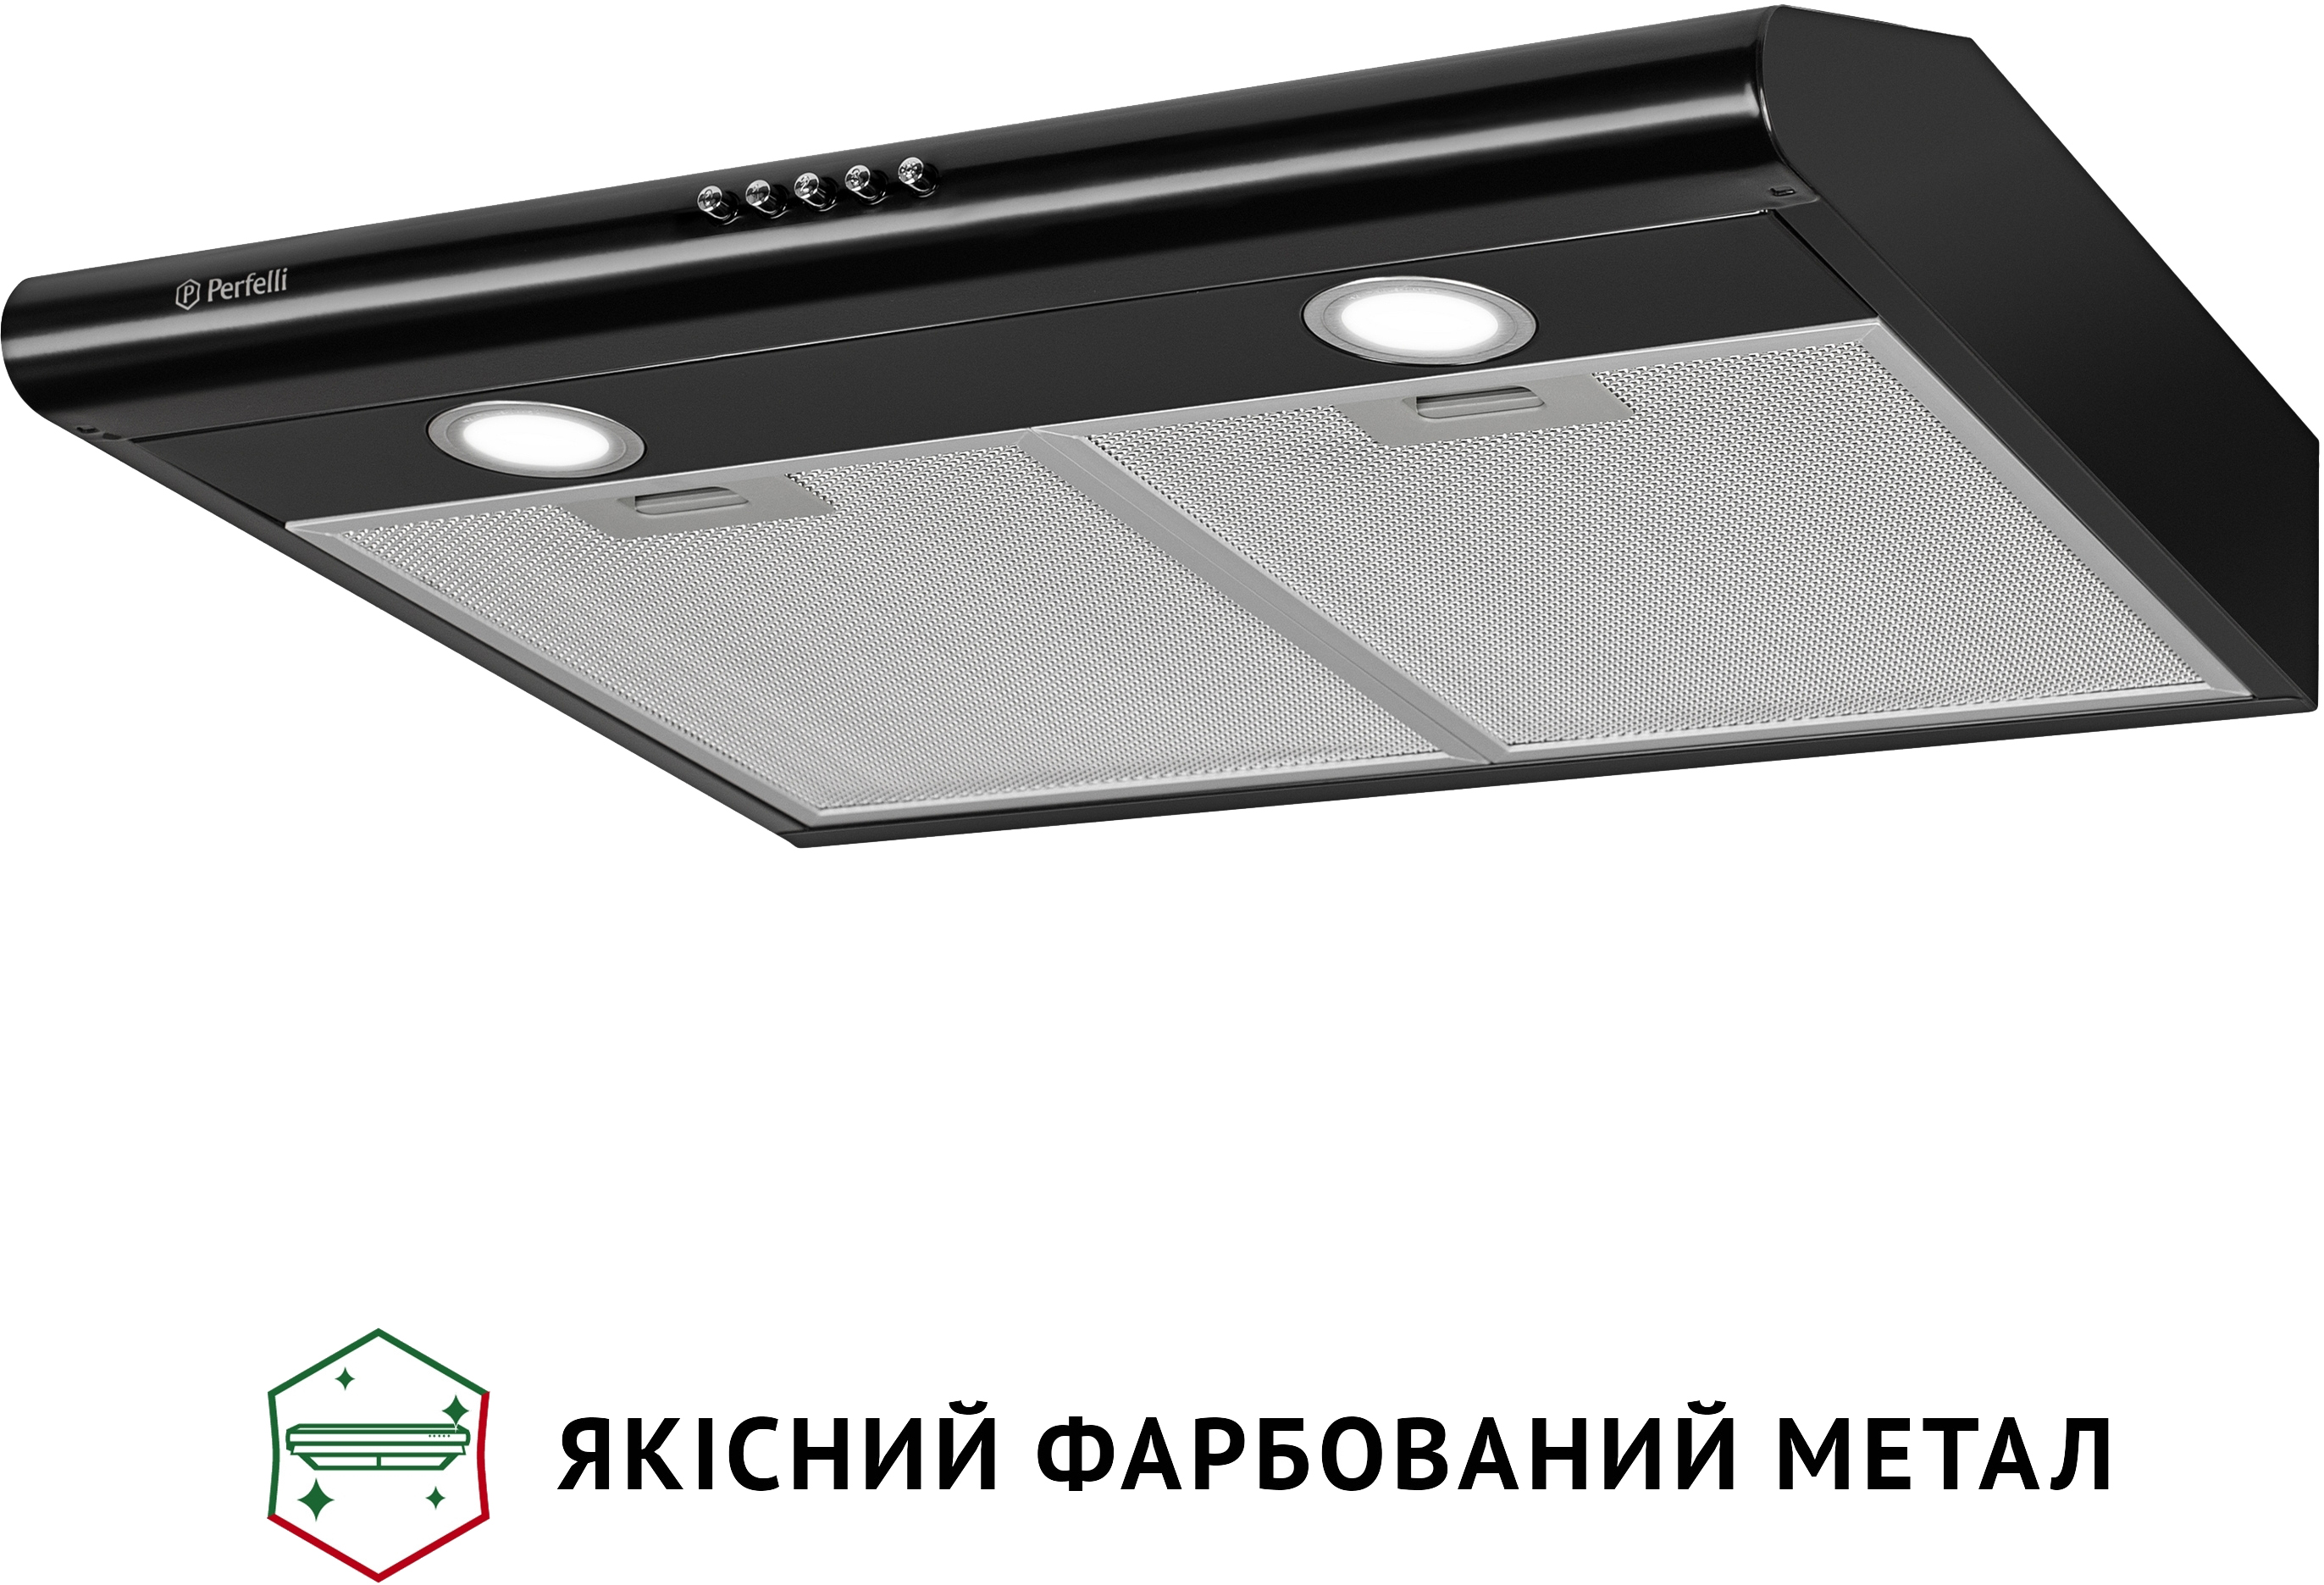 продаём Perfelli PL 6022 BL LED в Украине - фото 4